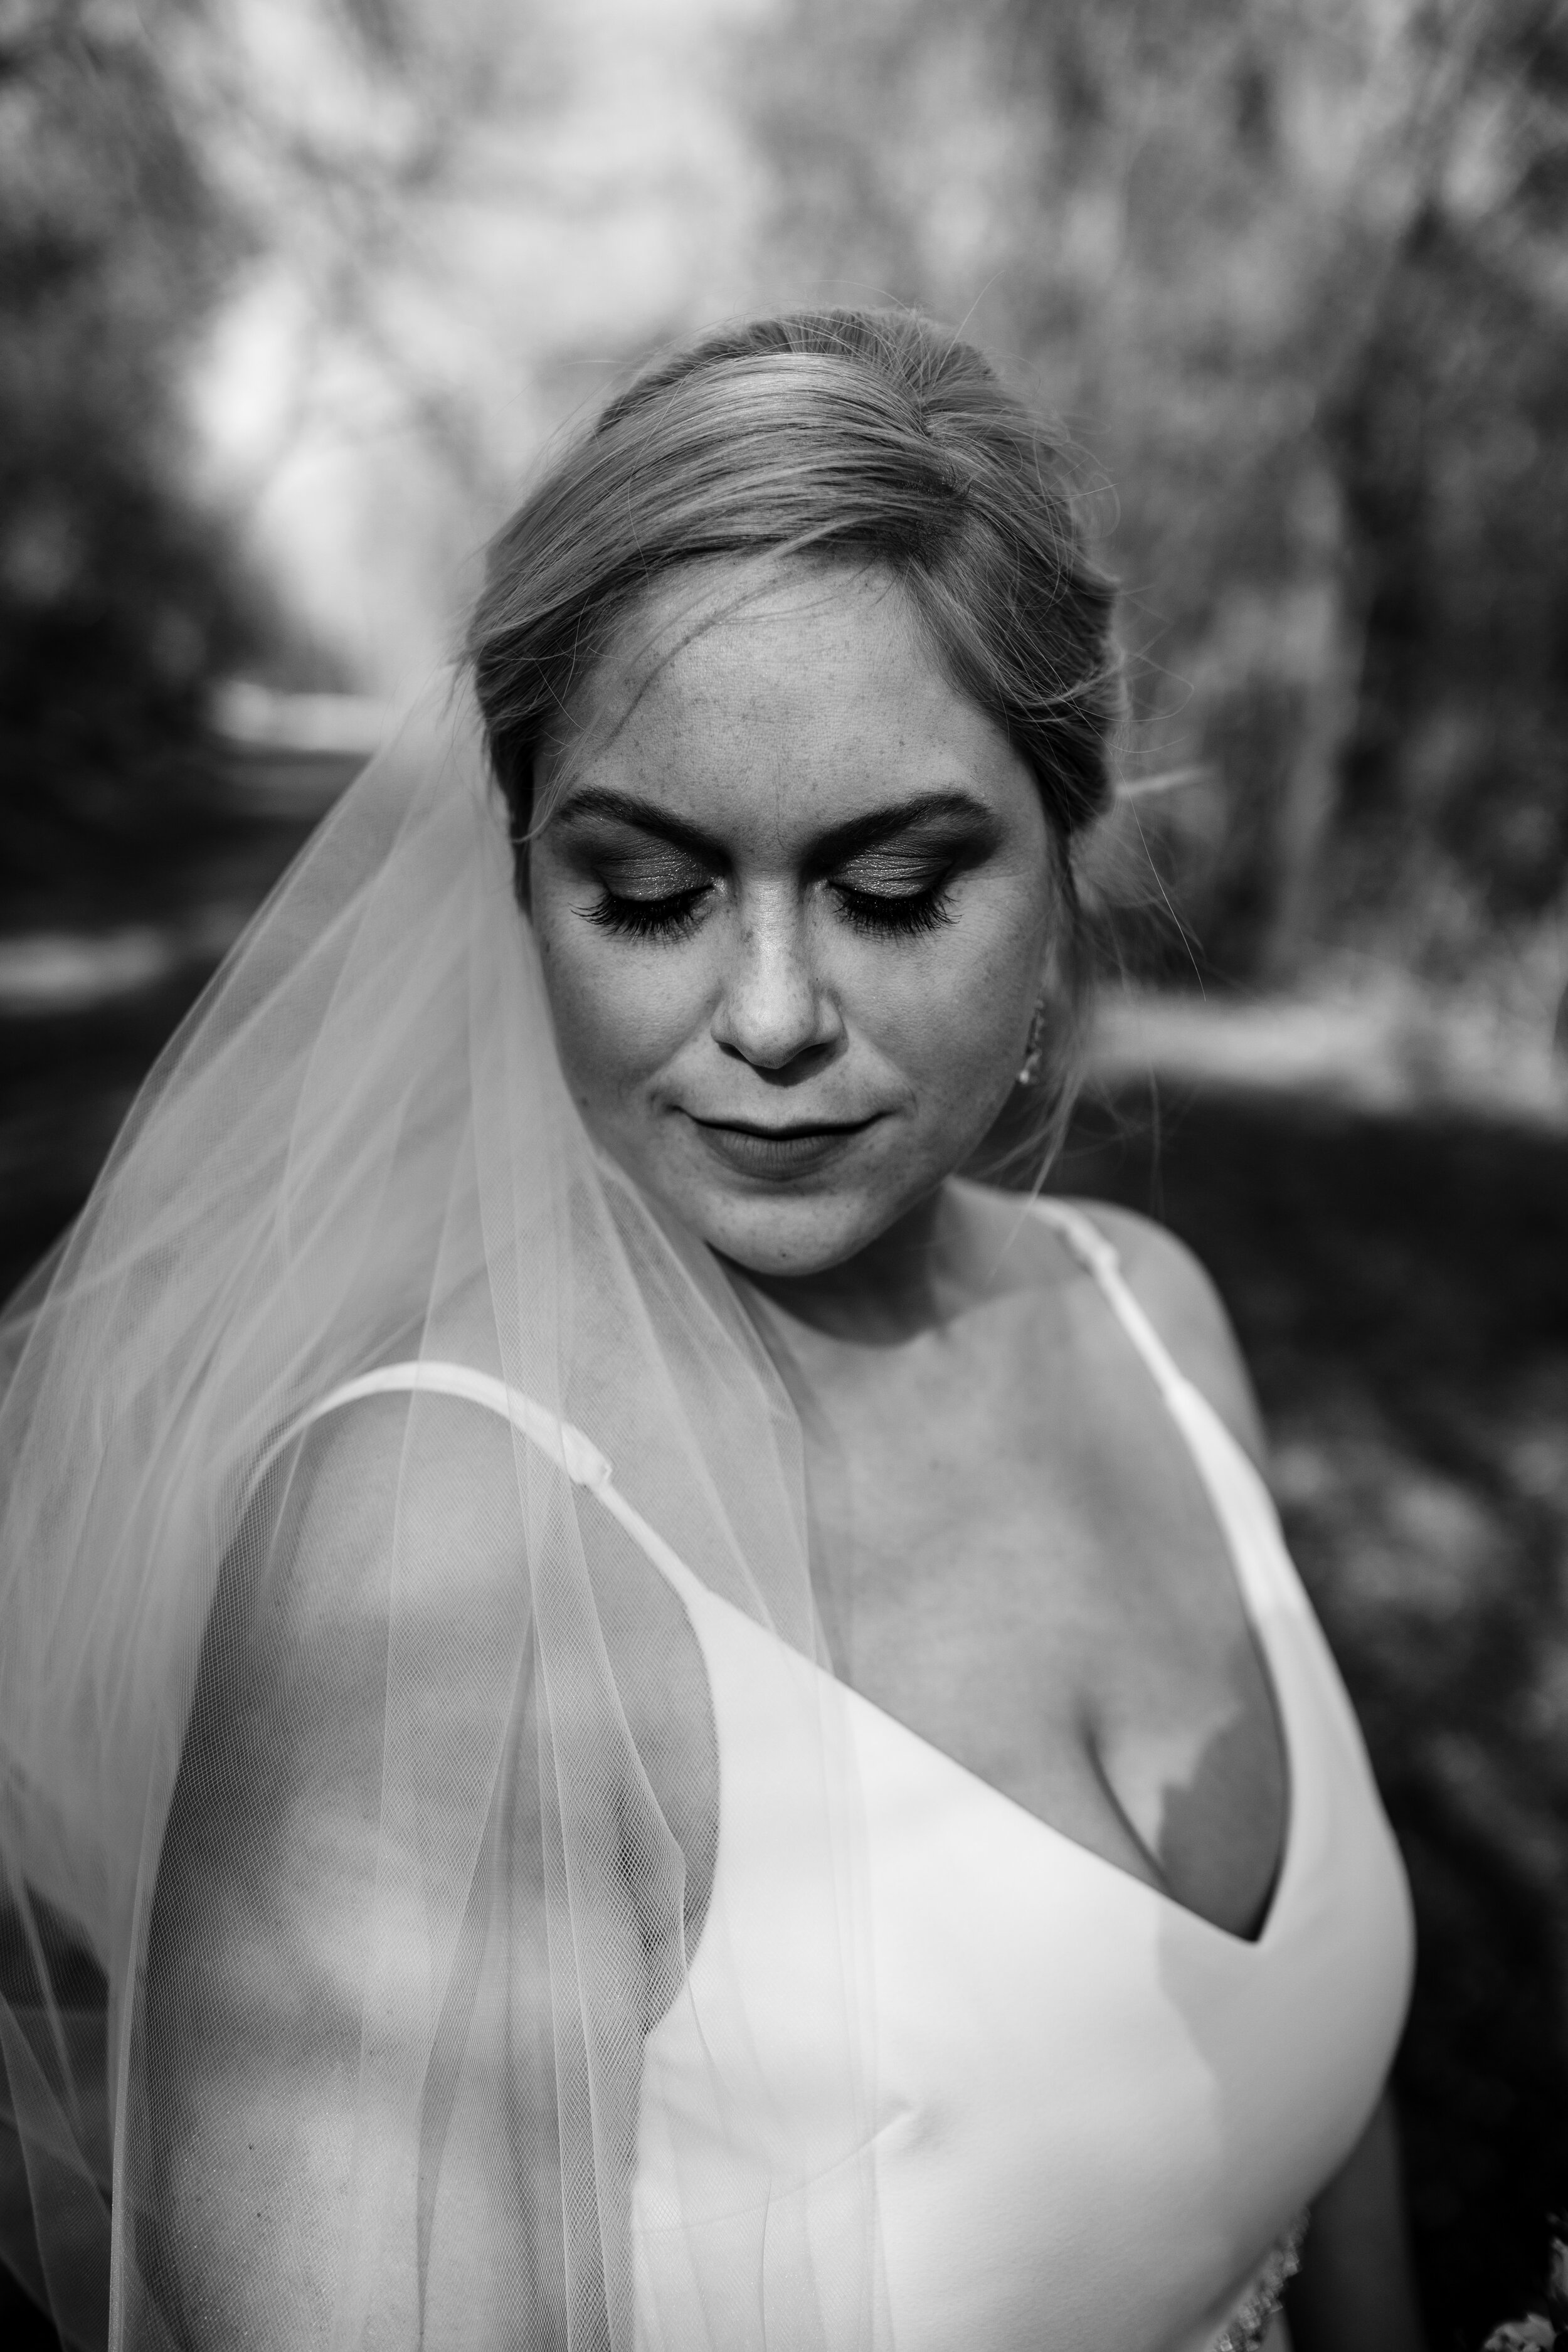 michigan-wedding-photographer-jessica-max-CoreysgettingMaryed-147.jpg